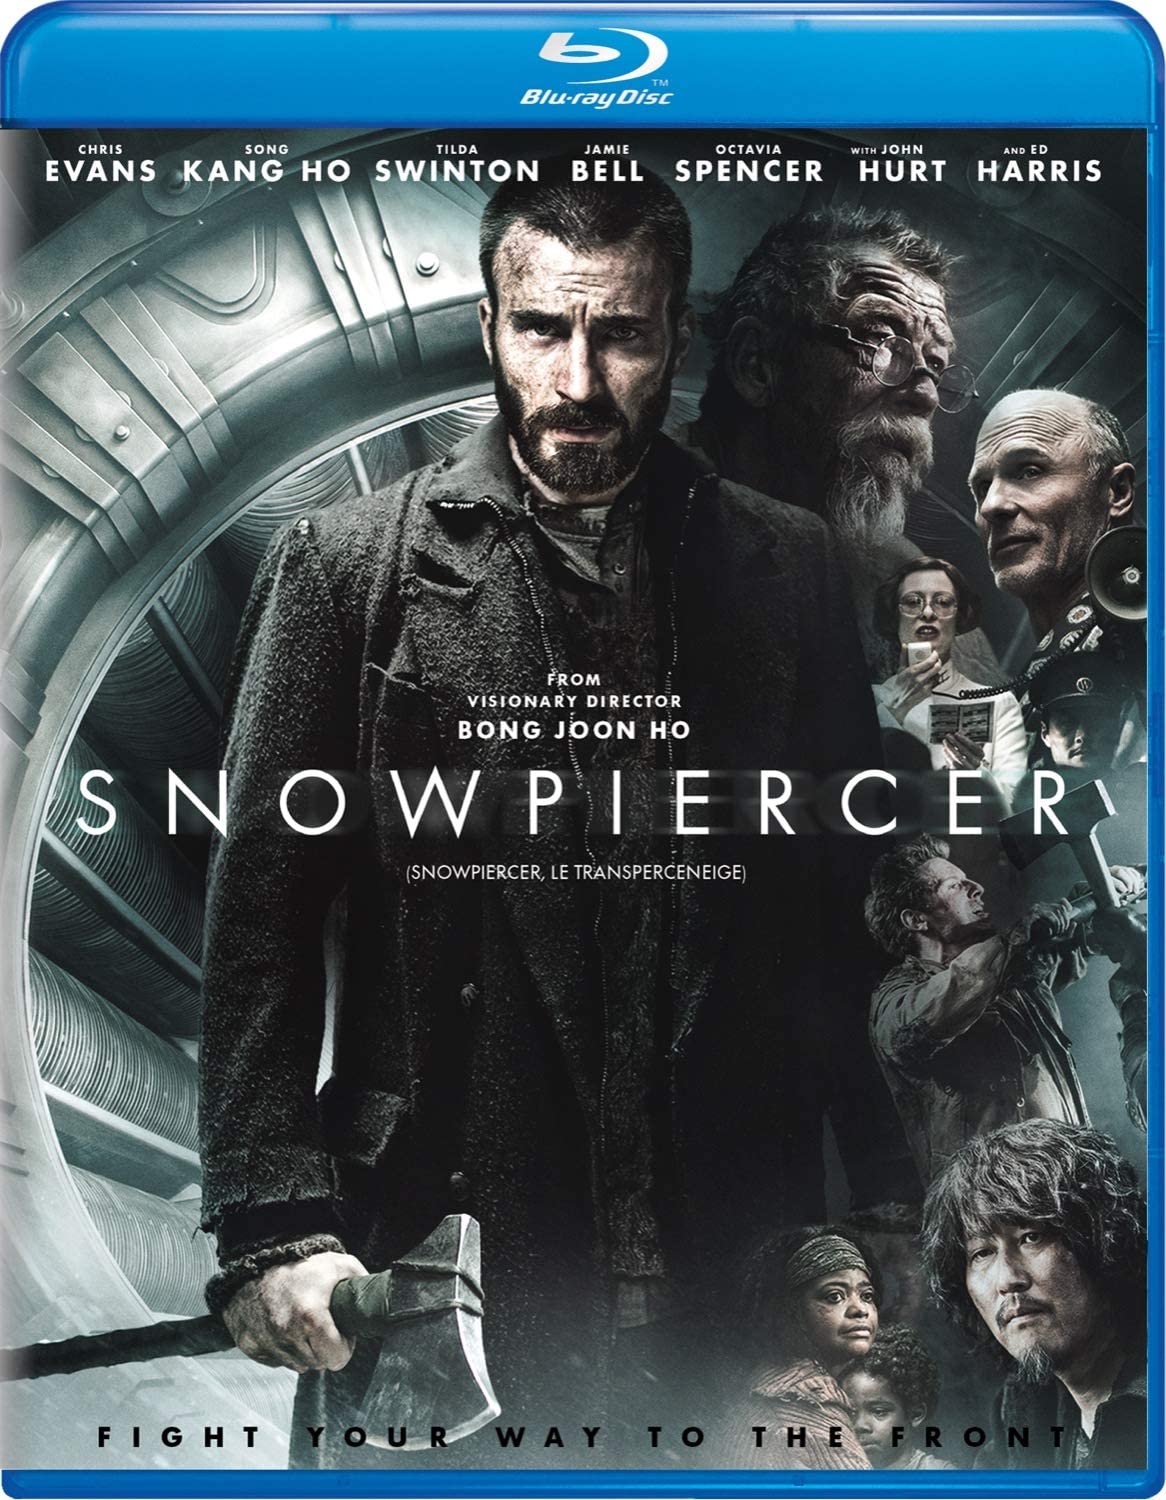 Snowpiercer / Snowpiercer/ le transperceneige (Bilingual) [Blu-ray]